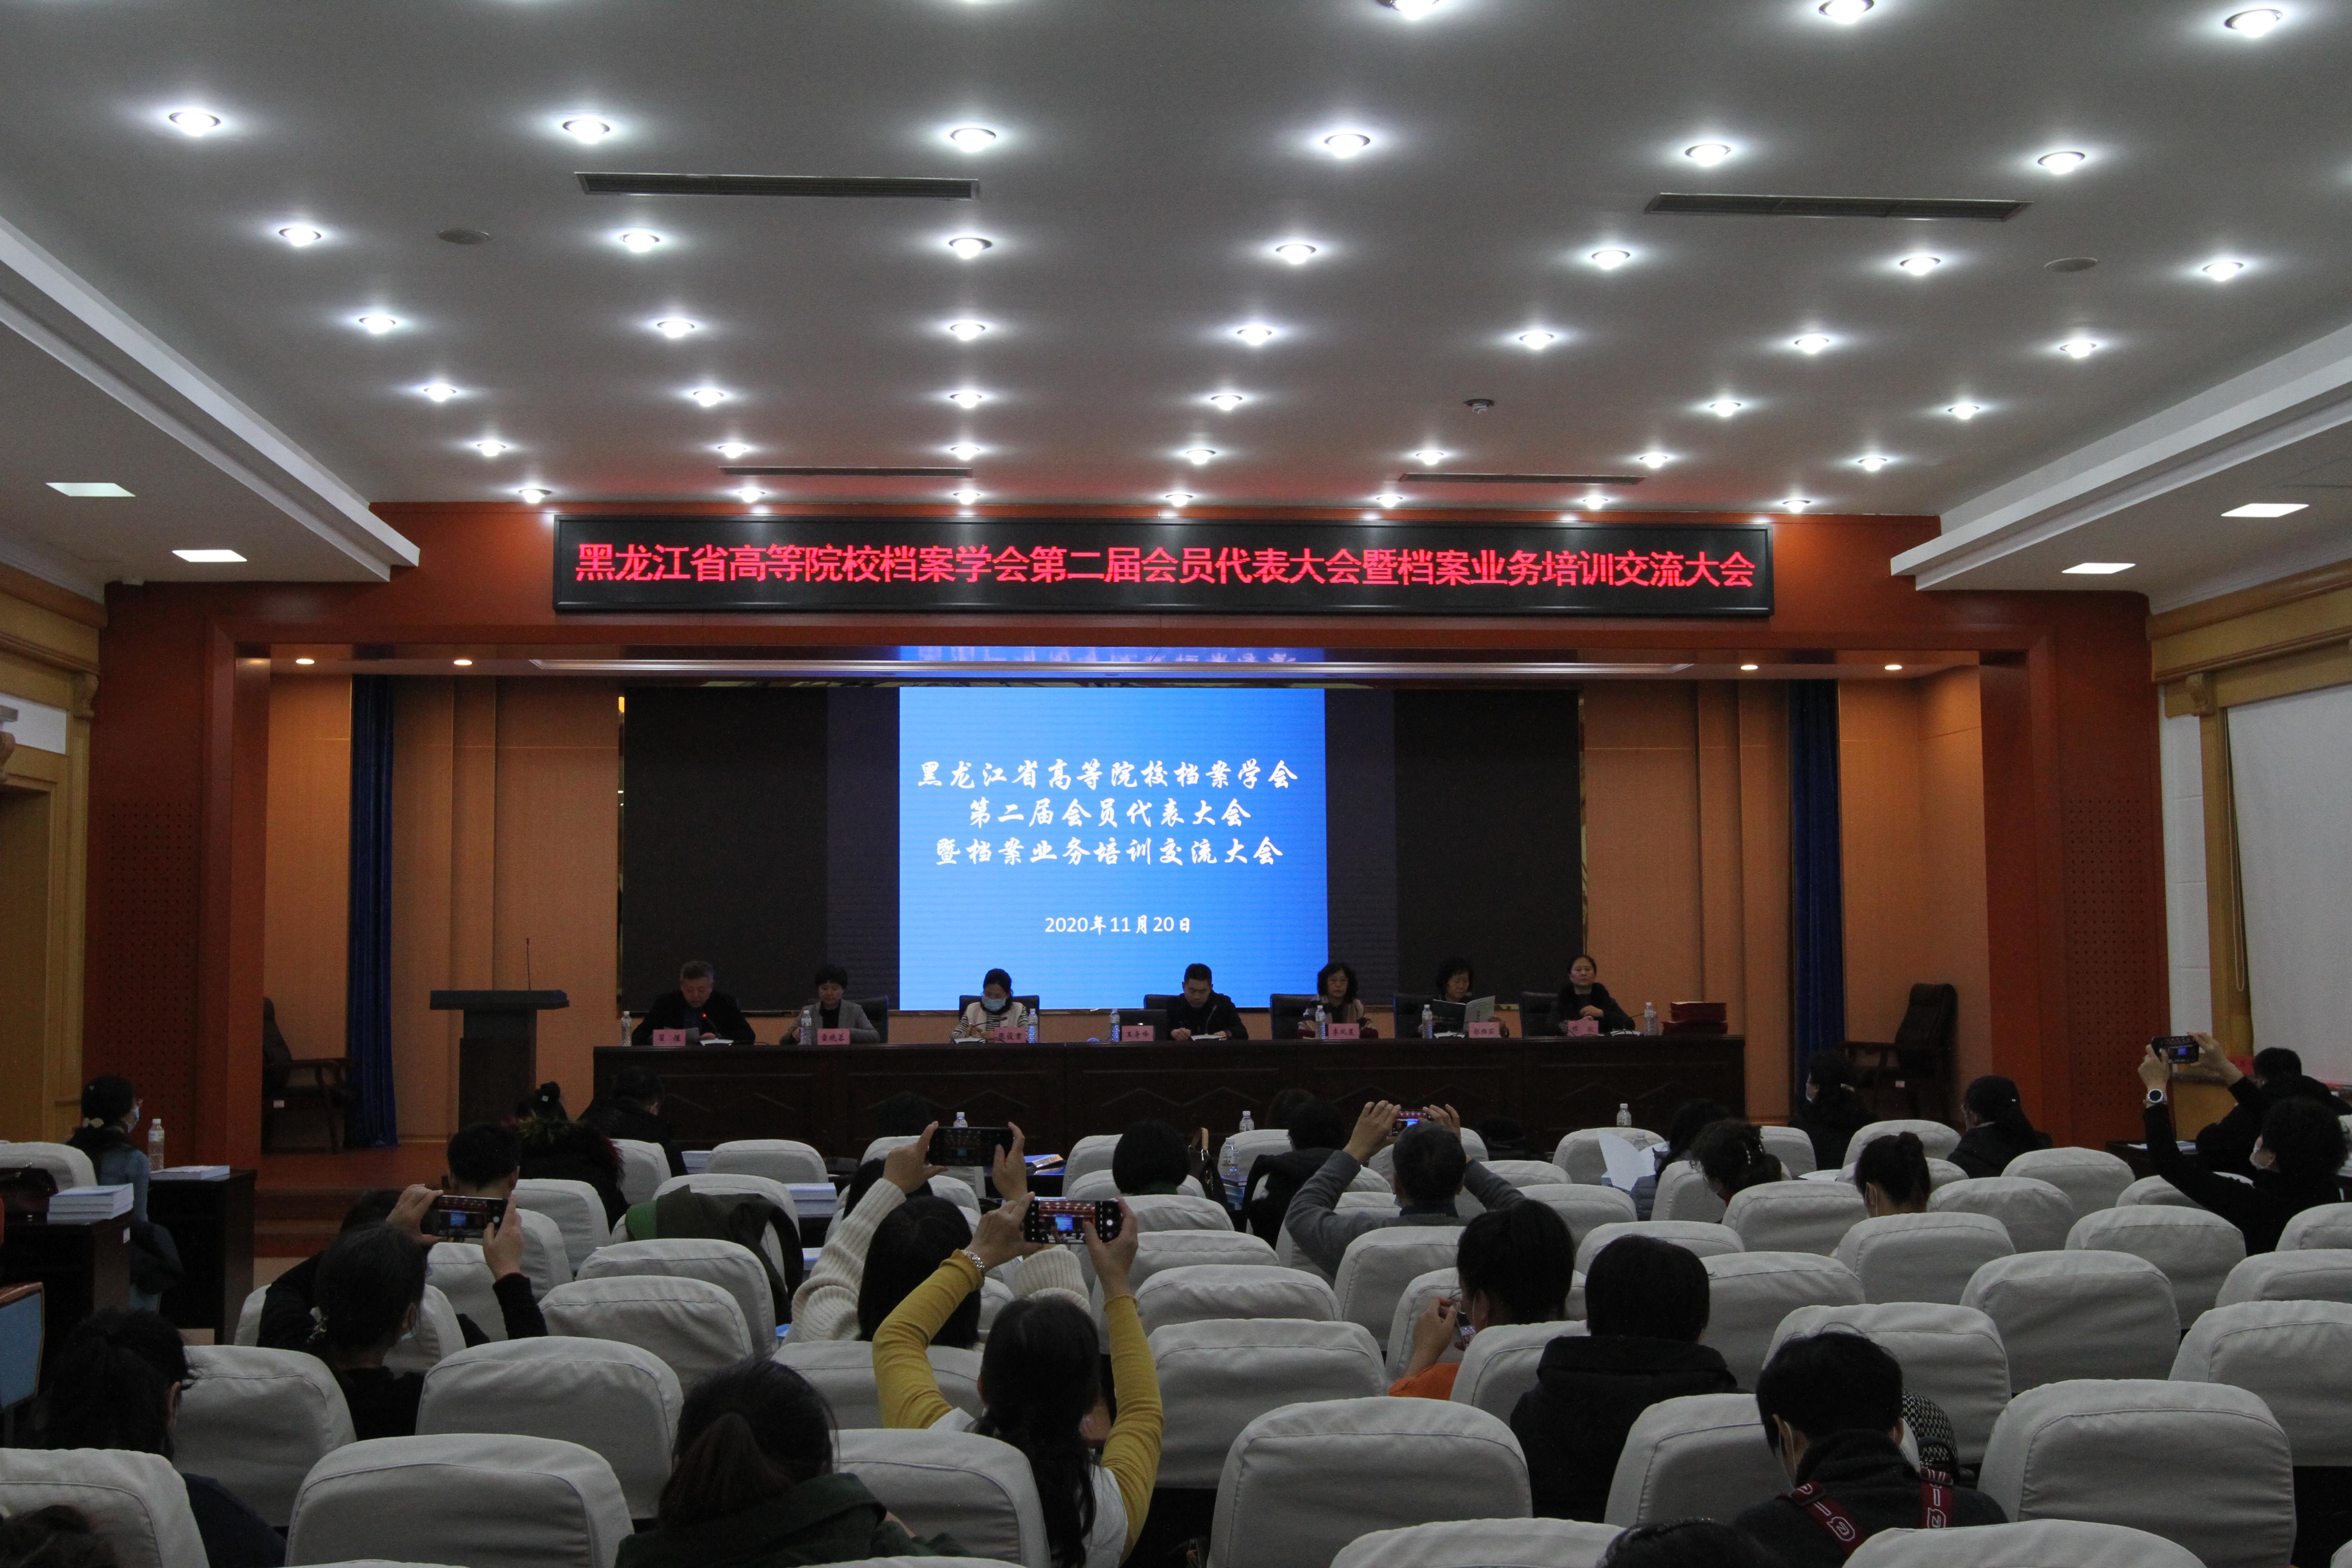 黑龙江省高等院校档案学会第二届会员代表大会暨档案业务培训交流大会